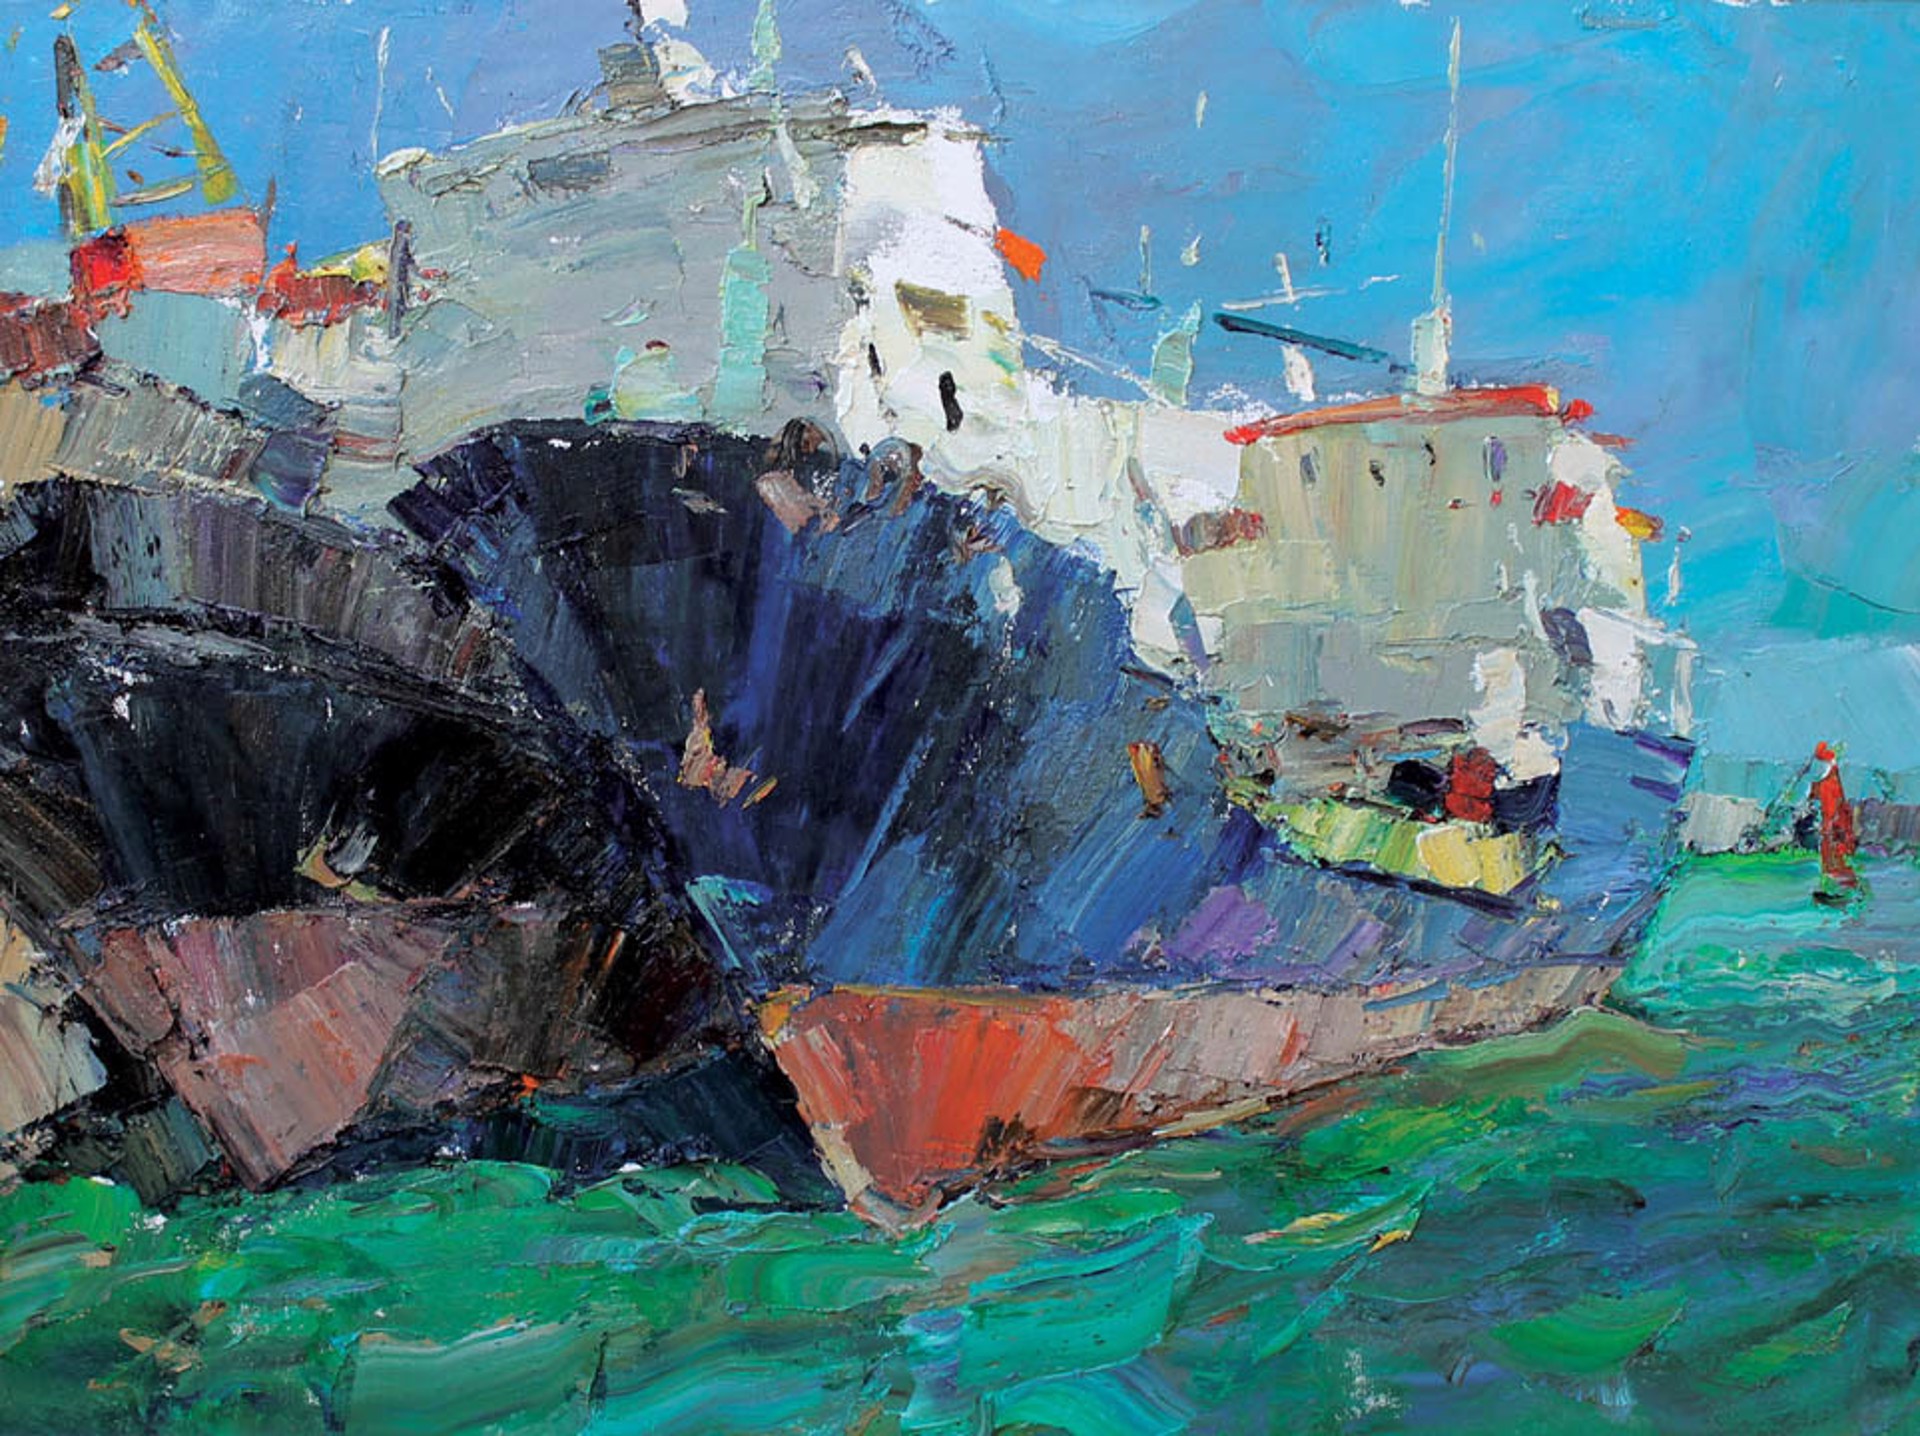 Ships at Port by Andrey Inozemtsev